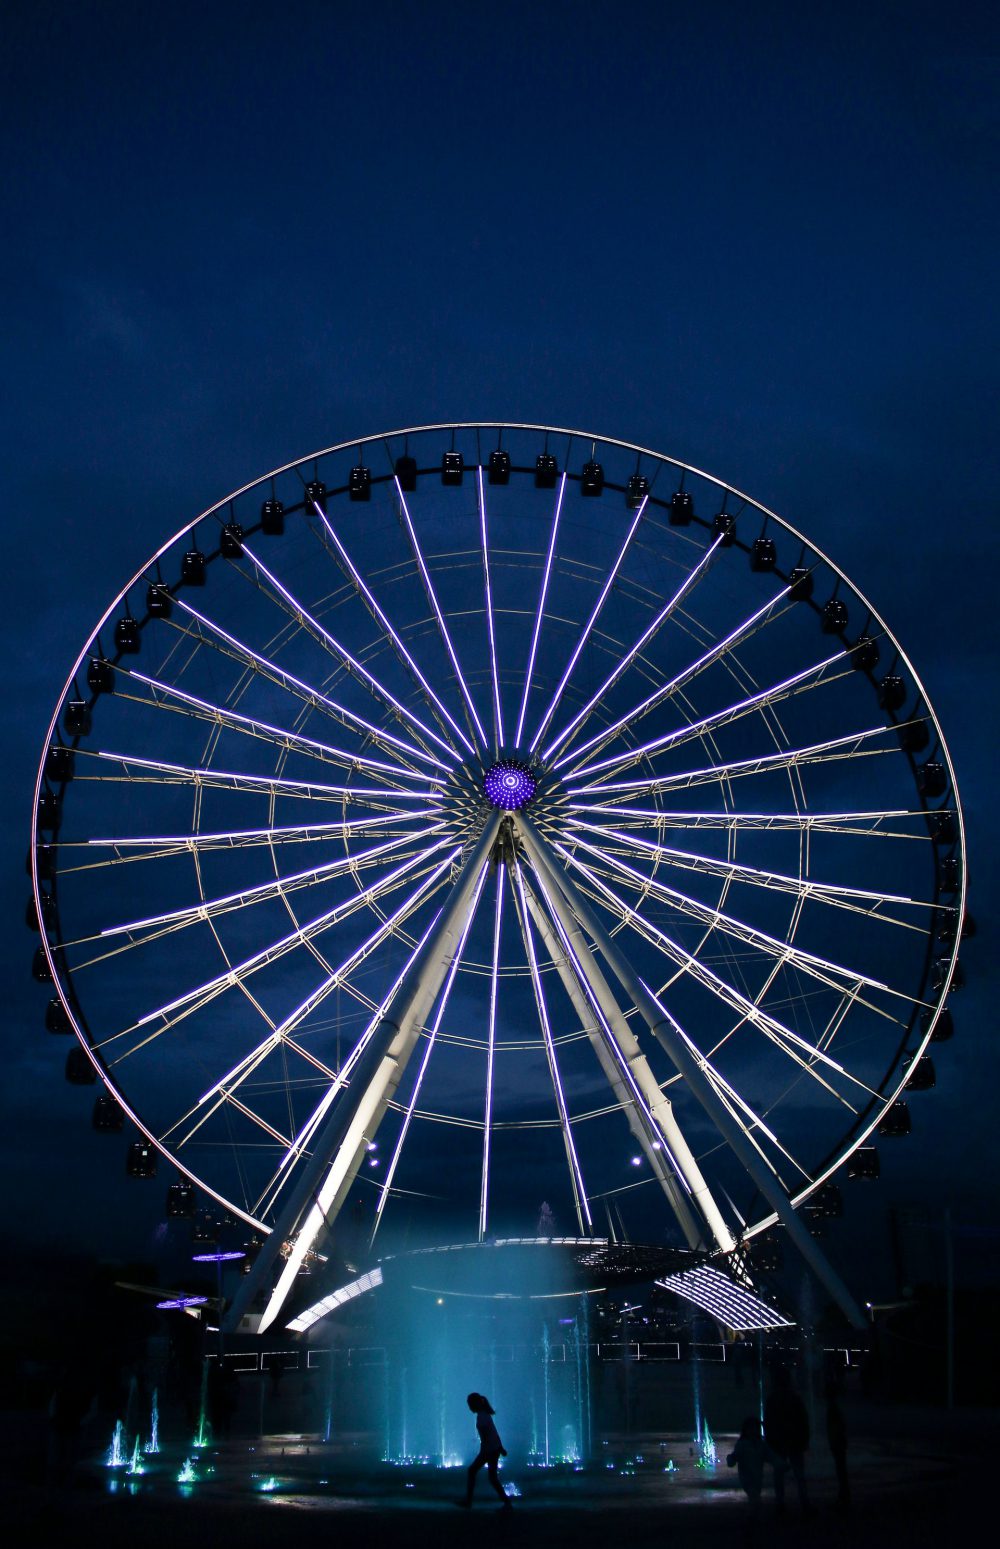 A n image of a Ferris wheel